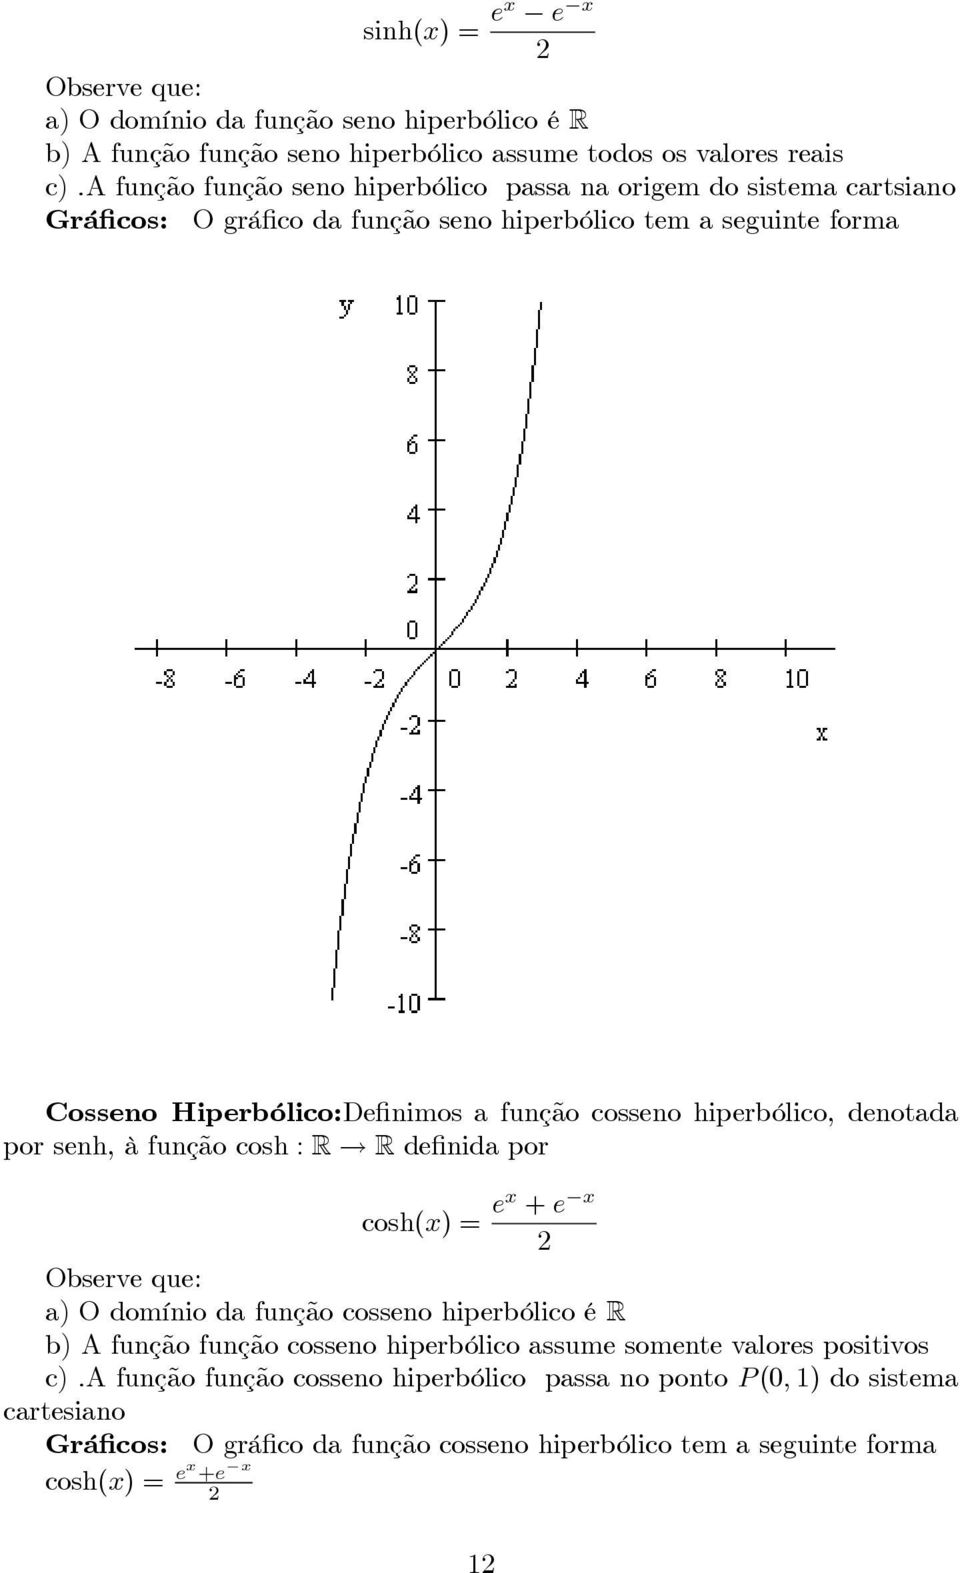 cosseno hiperbólico, denotada por senh, à função cosh : R R definida por cosh(x) = ex + e x Observe que: a) O domínio da função cosseno hiperbólico é R b) A função função cosseno